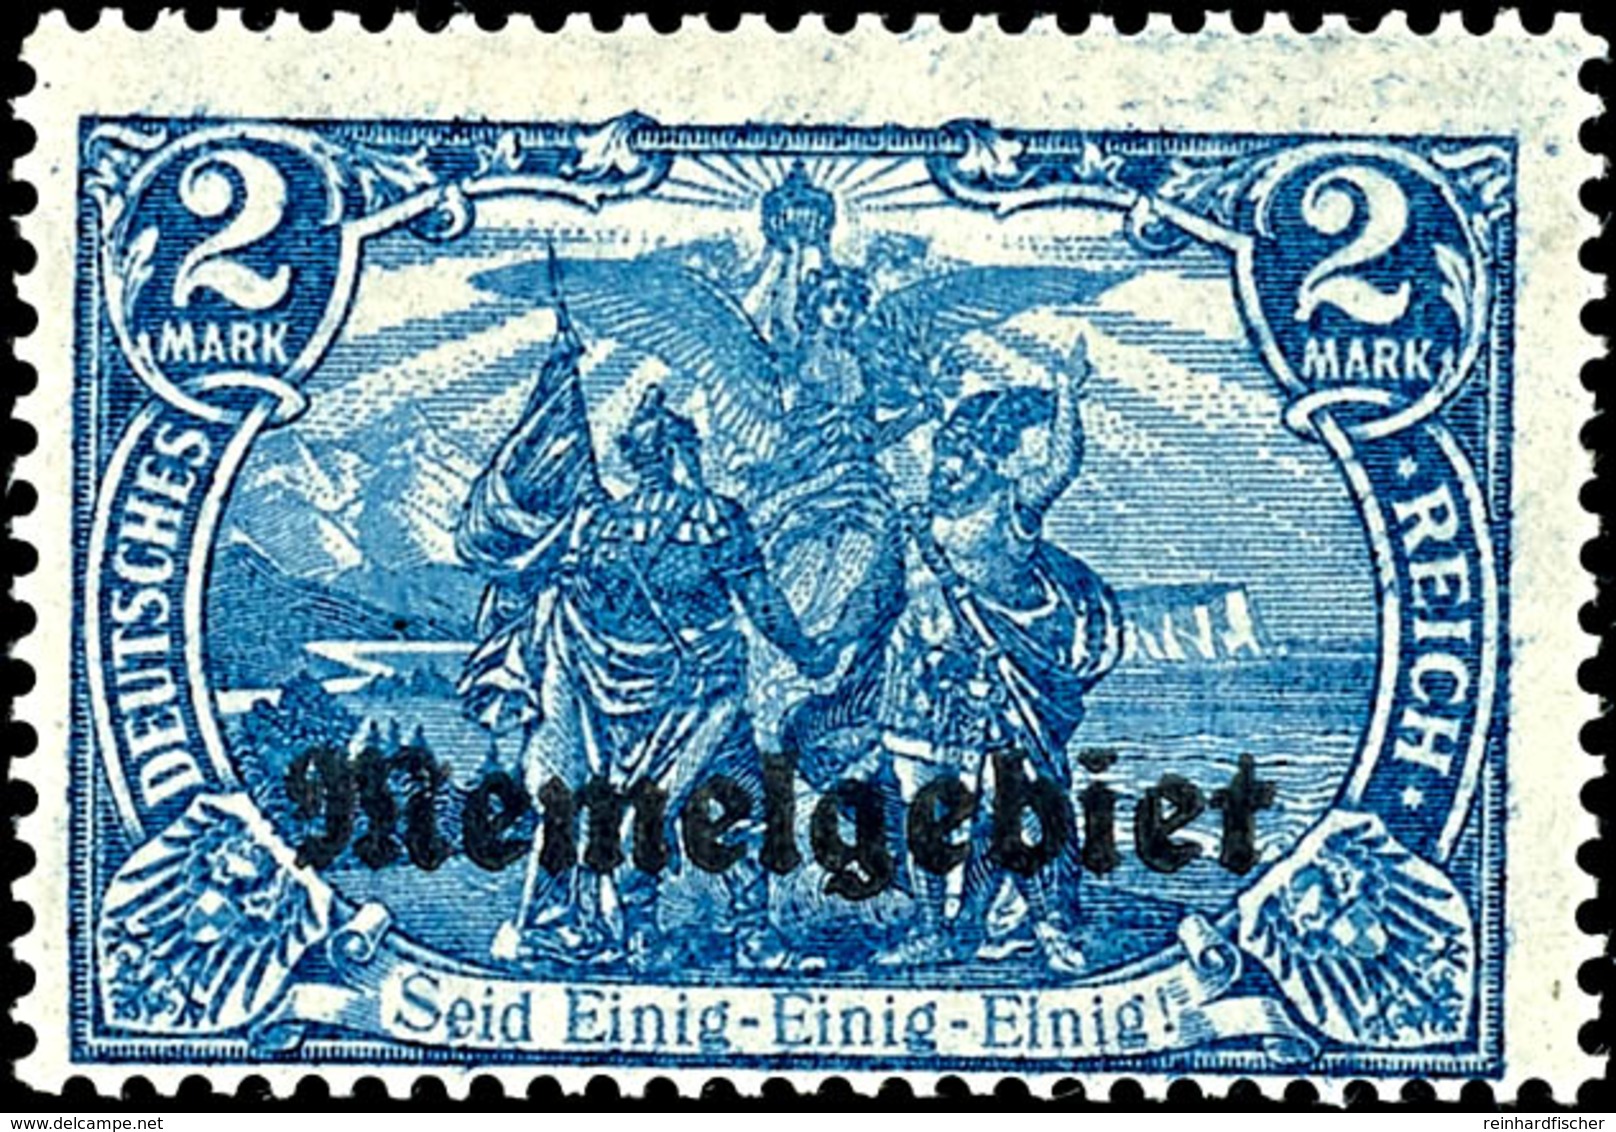 2 Mark Deutsches Reich Blau Mit Aufdruck "Memelgebiet", Abart "26:17 Statt 25:17 Zähnungslöcher", Ungebrauchtes Luxusstü - Memelland 1923